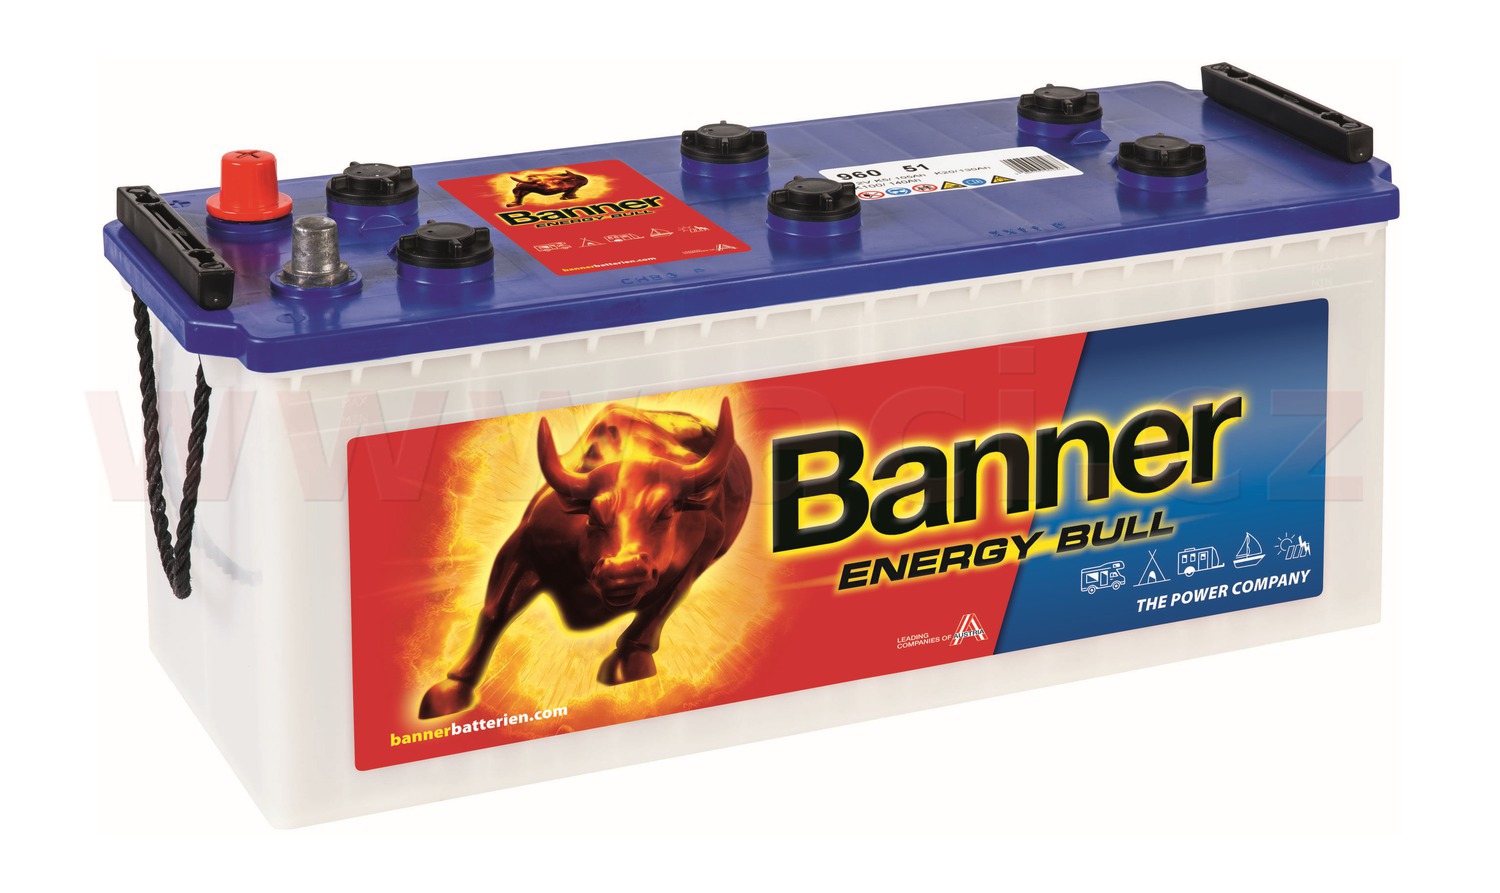 130Ah trakční baterie, levá BANNER Energy Bull Dual Power 514x189x195(220)